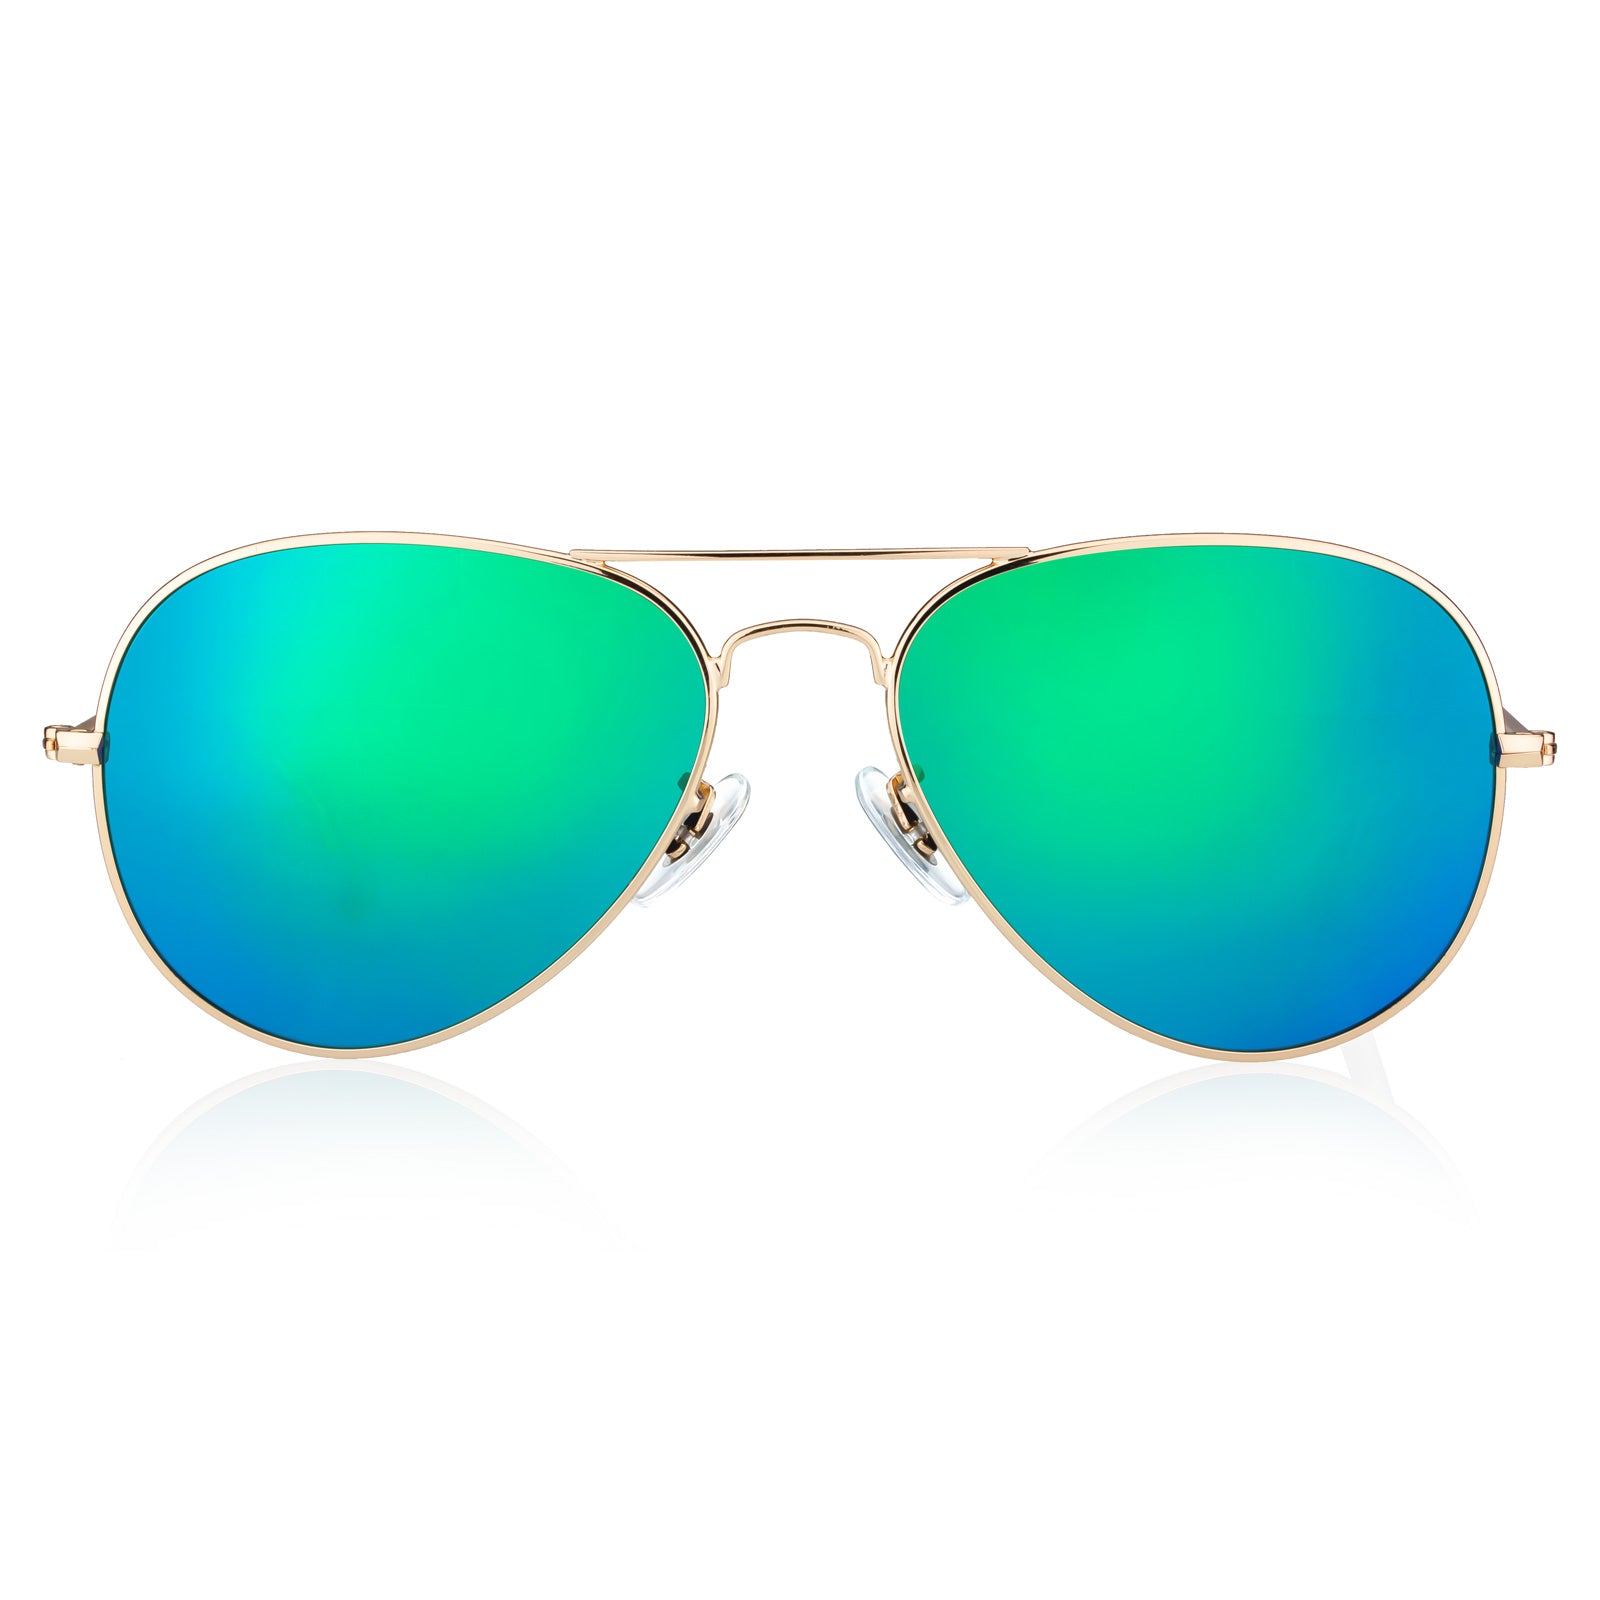 Mirror coating sunglasses, HASTA 84% OFF liquidación increíble